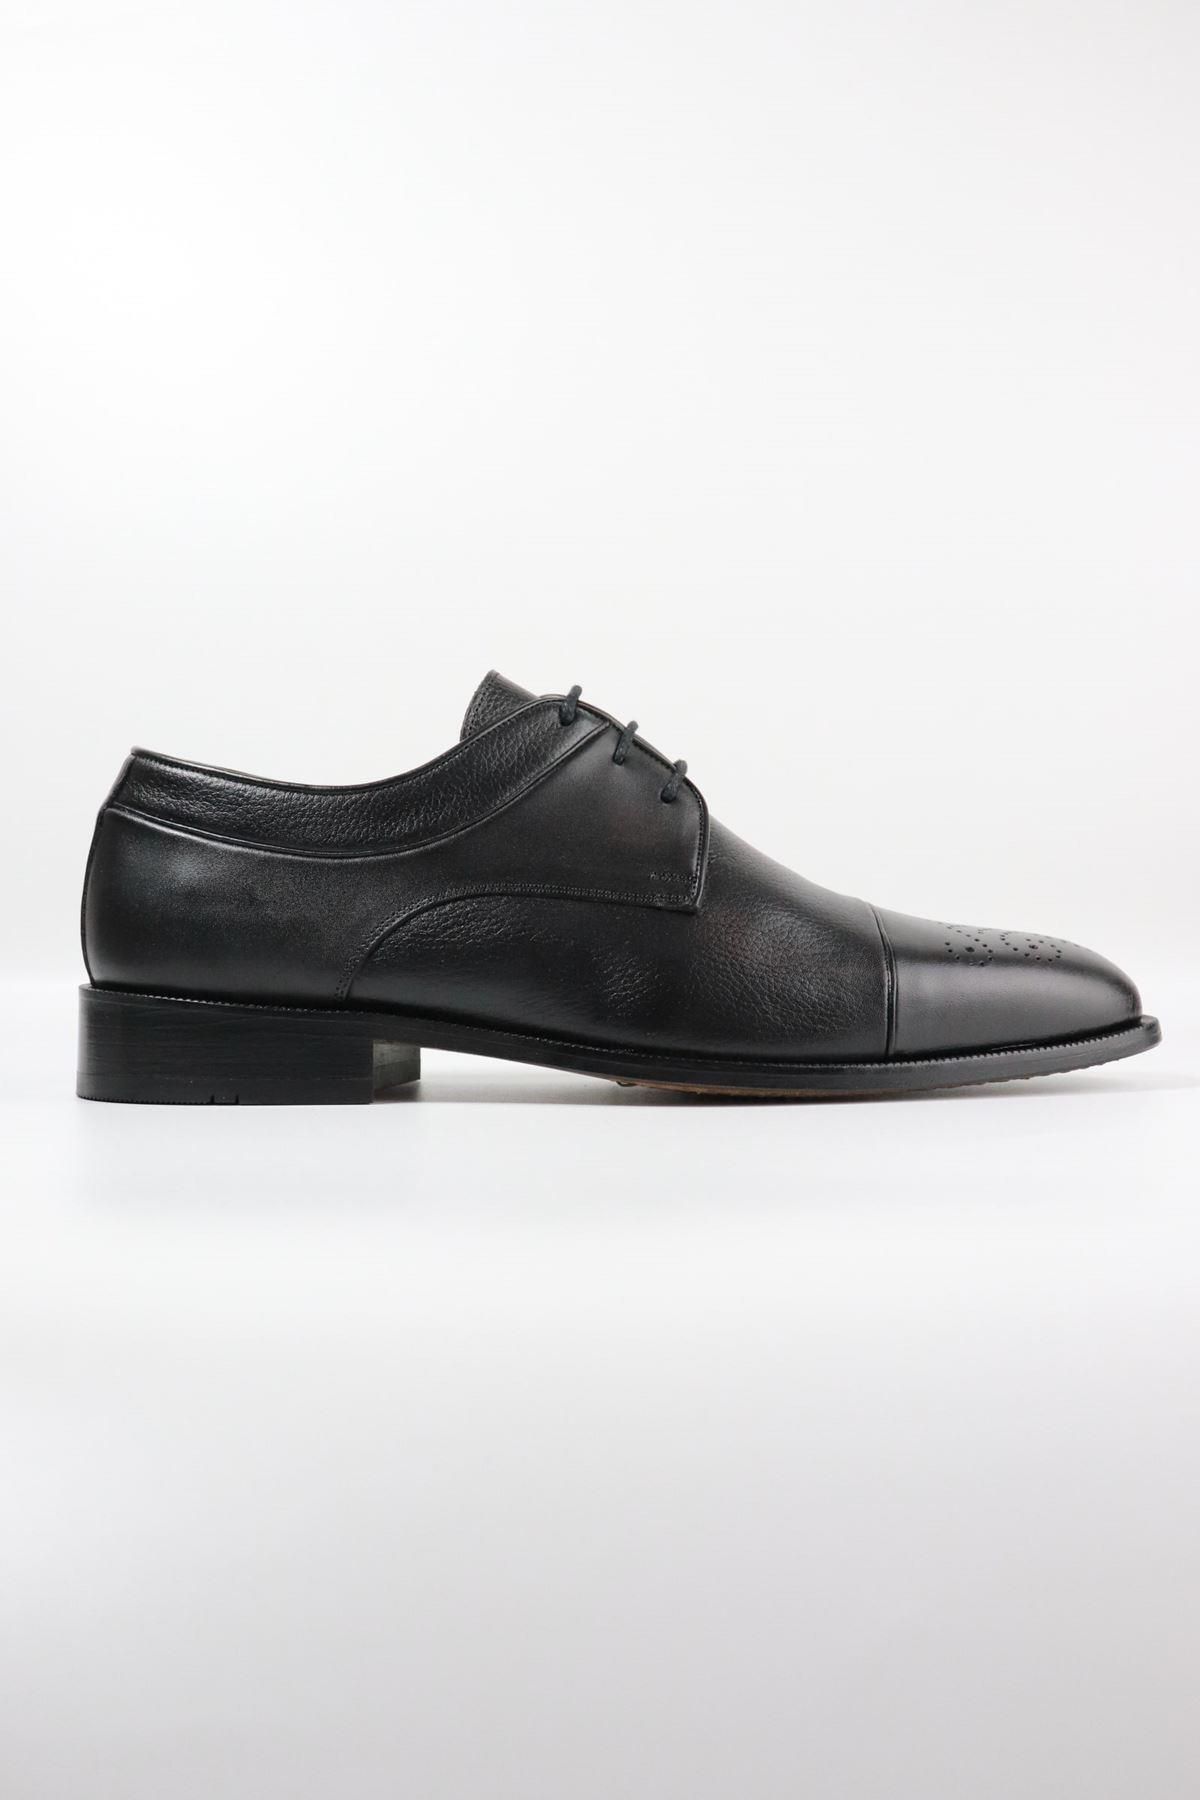 DANACI Danacı - 9642 Siyah Hakiki Deri Hakiki Kösele Erkek Klasik Ayakkabı